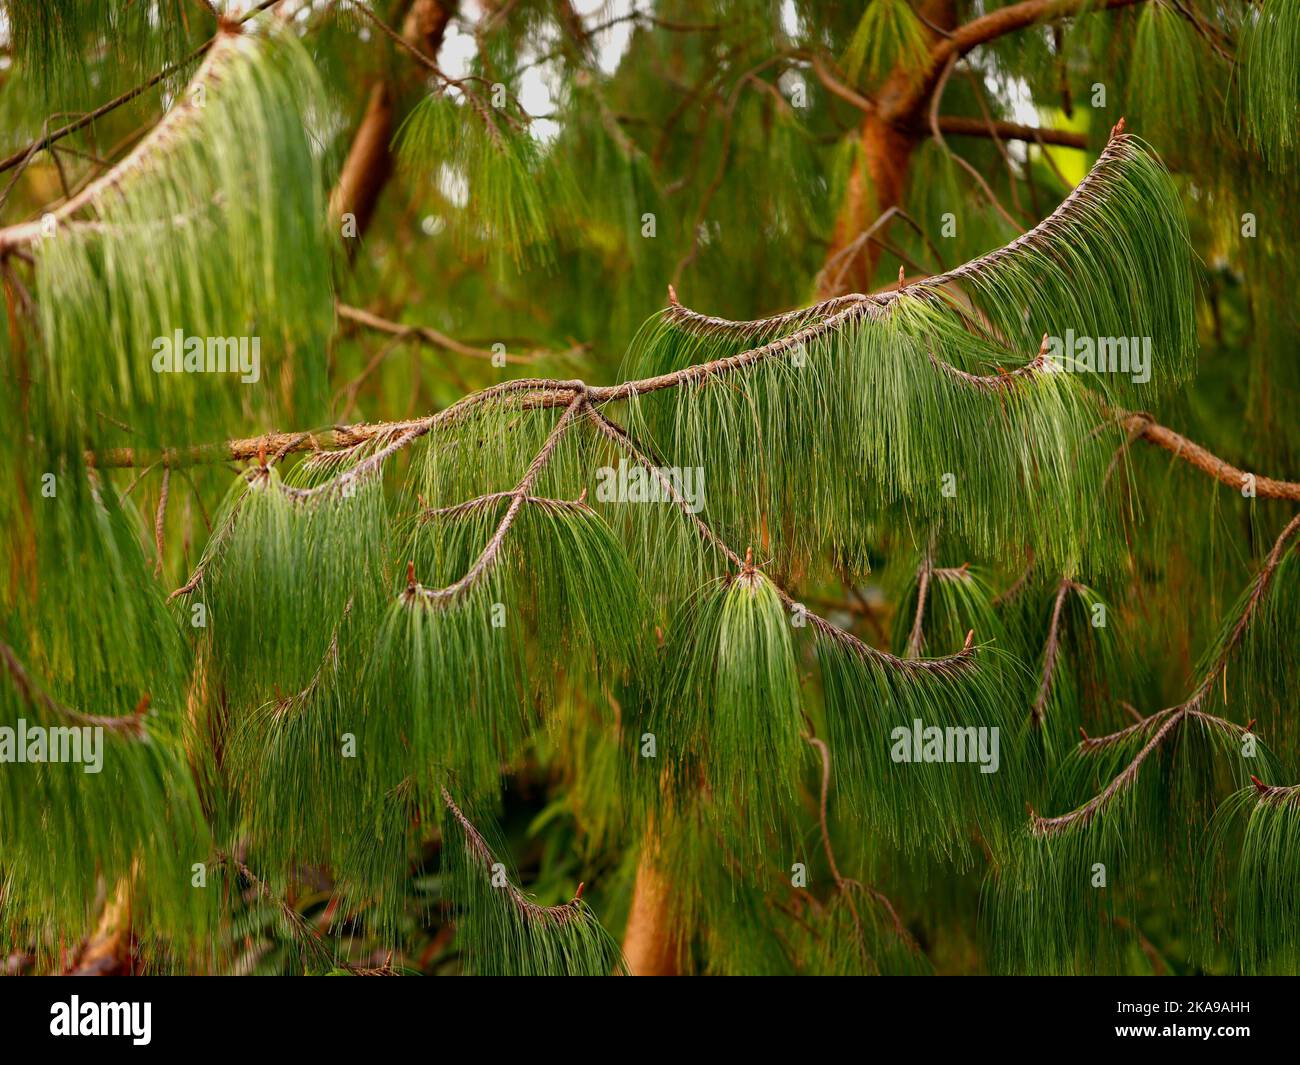 Nahaufnahme der grünen nachlaufenden Kiefernnadeln des immergrünen Gartenbaums Pinus patula. Stockfoto